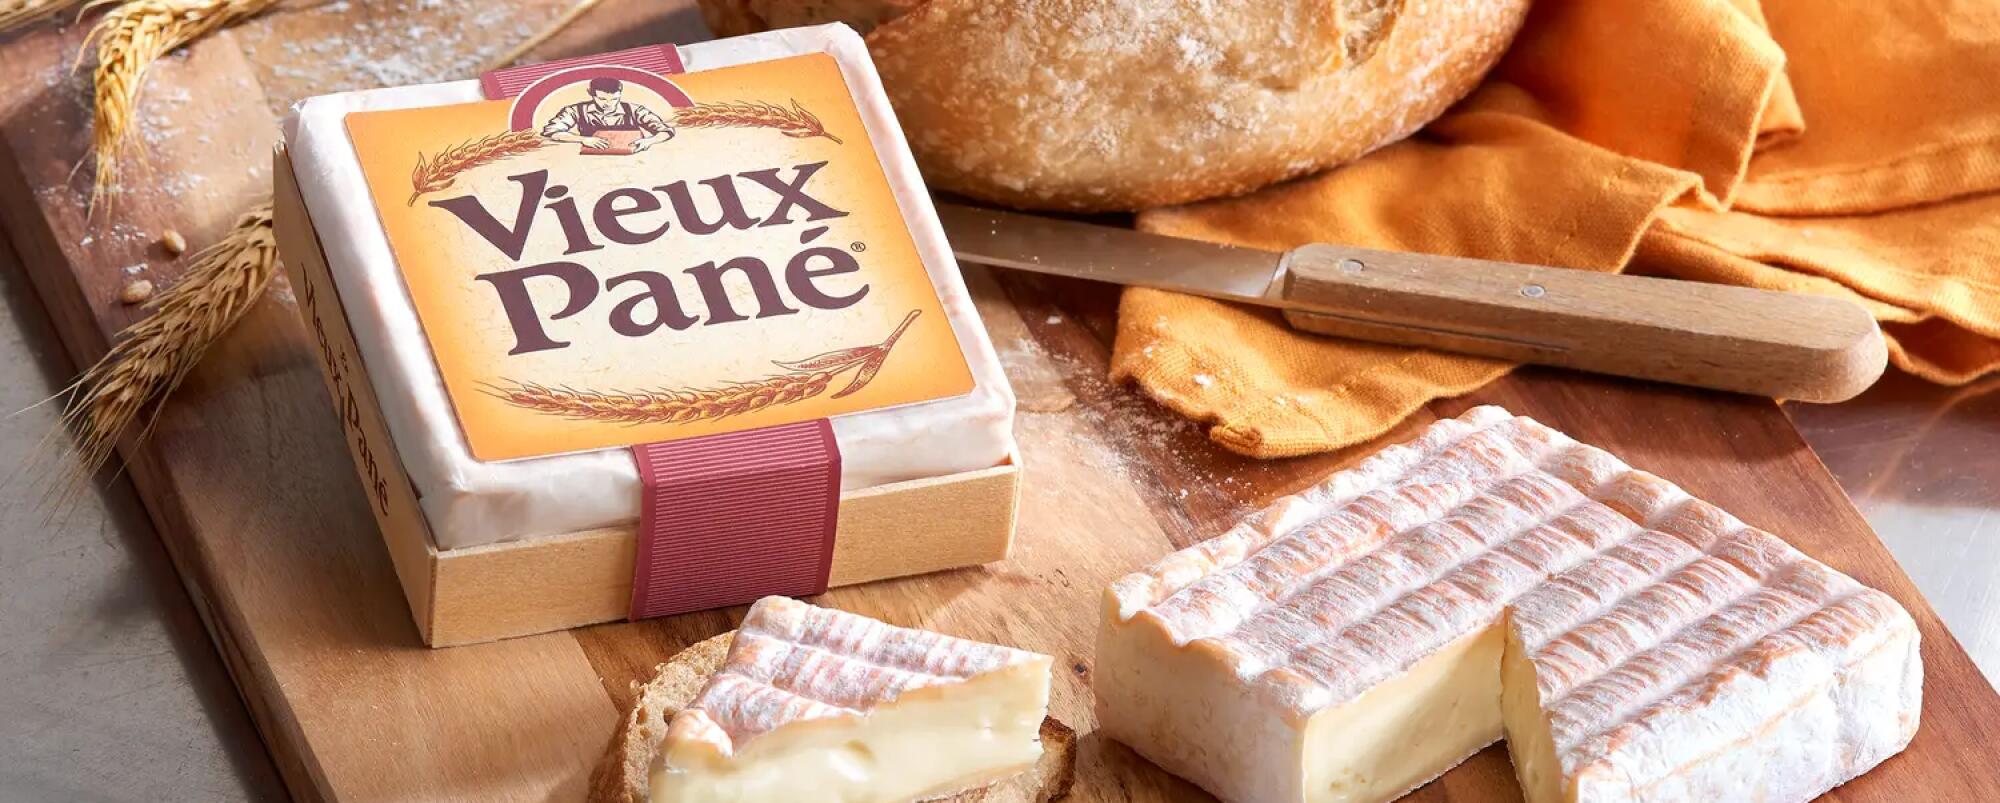 Vieux Pané 200g packshot ambiance étiquette simple pain entier